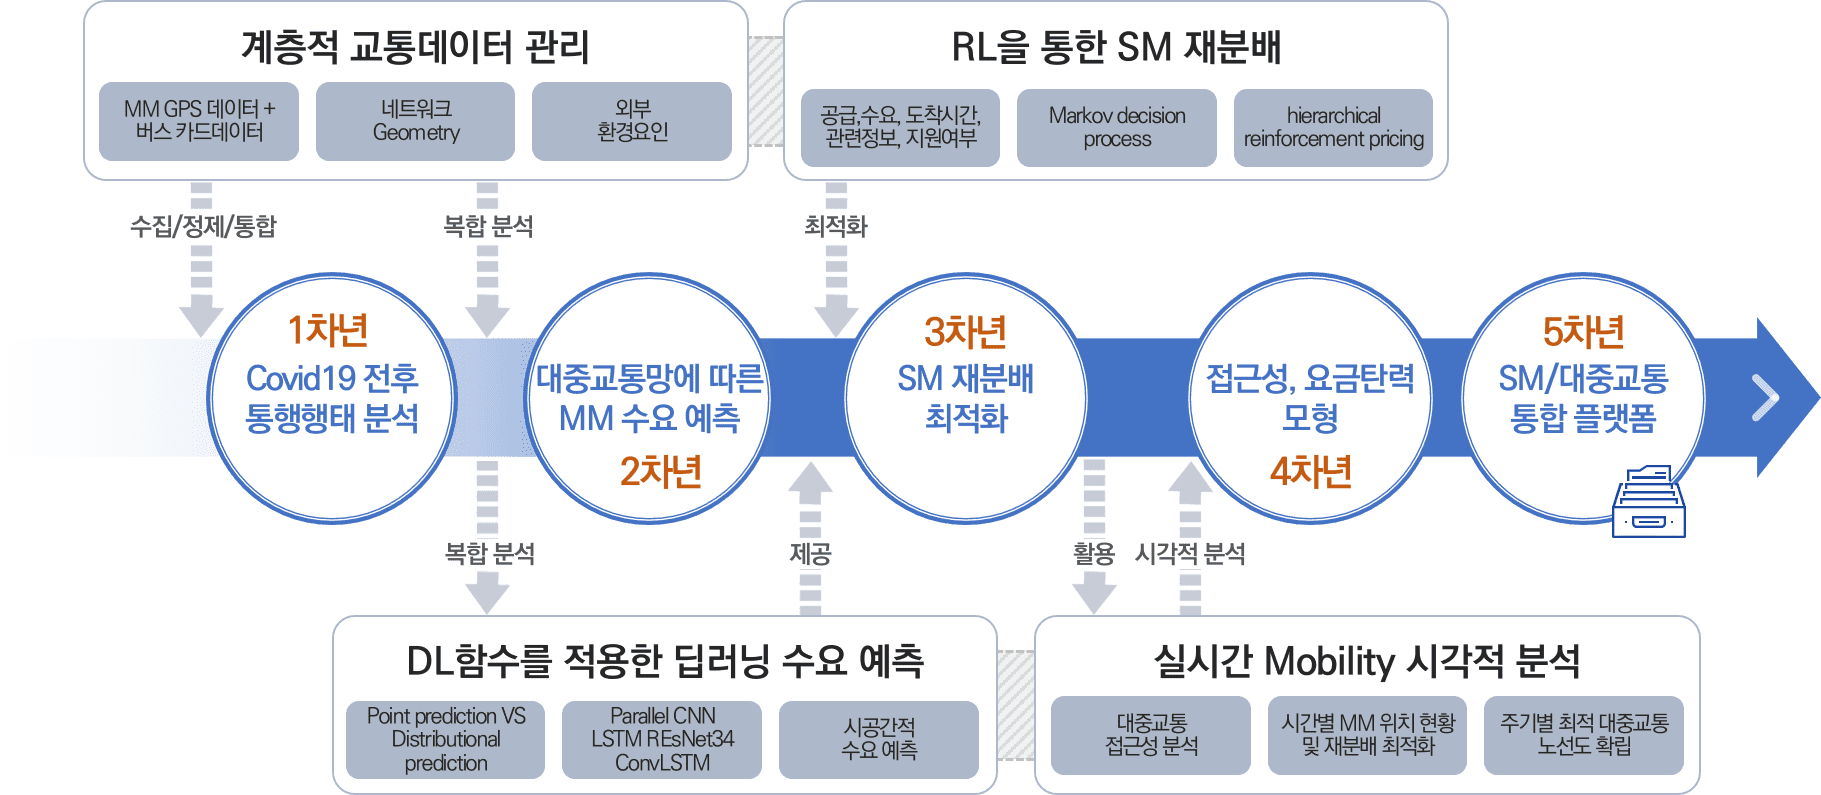 김인희교수 2021 기초연구사업 신진연구과제 선정